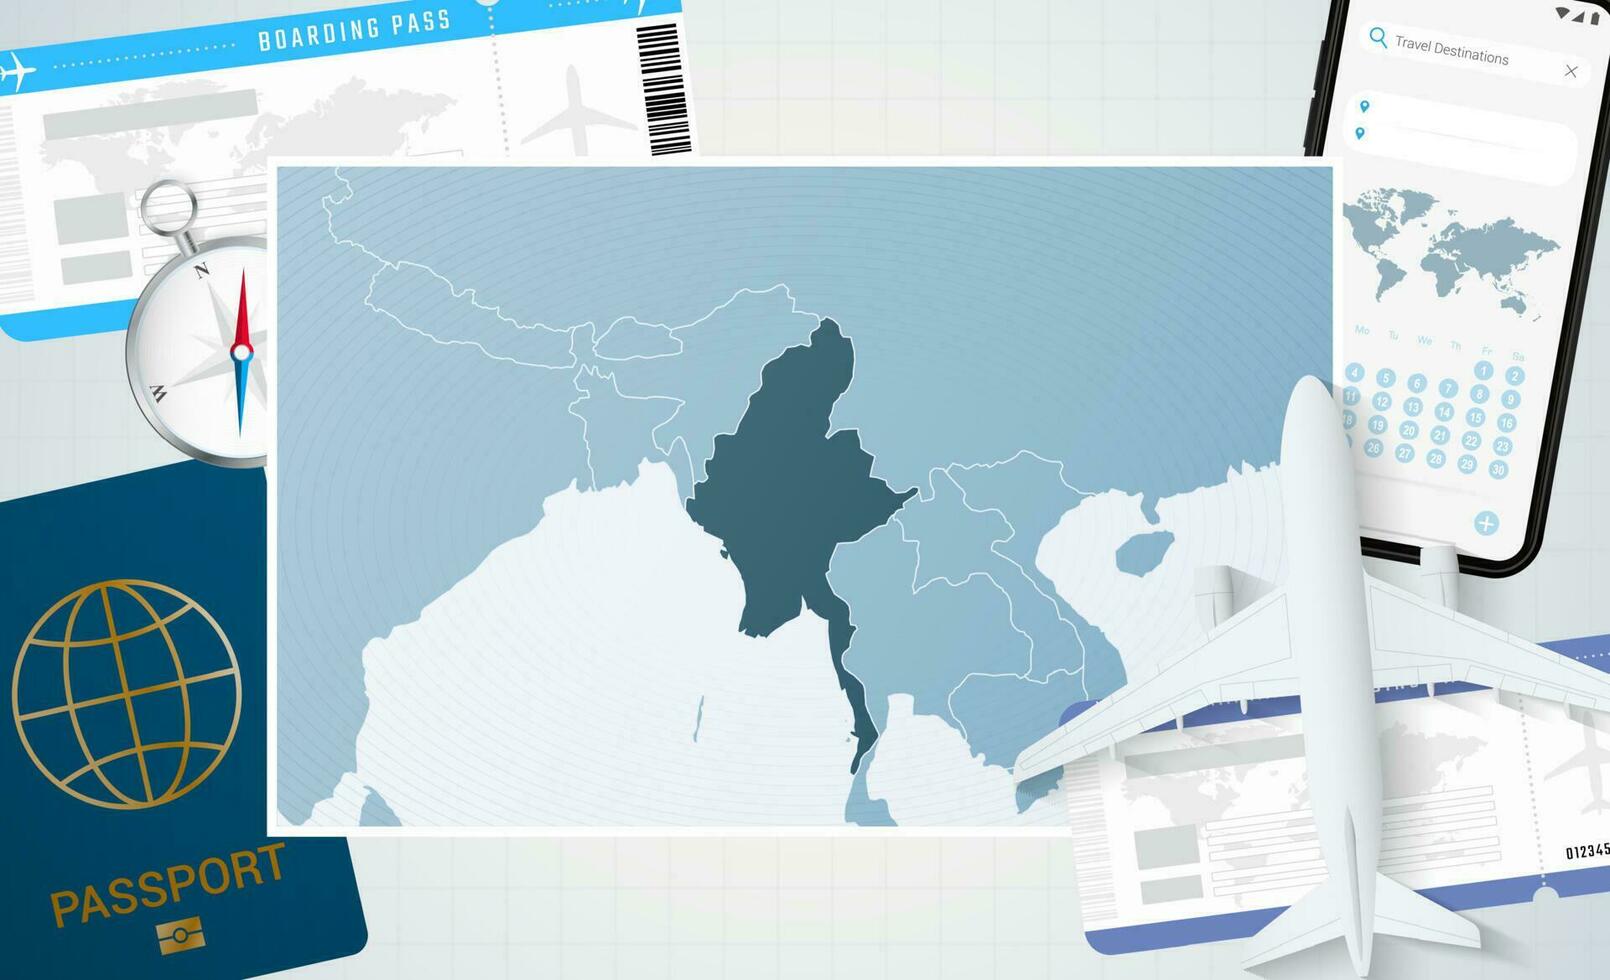 reis naar myanmar, illustratie met een kaart van myanmar. achtergrond met vliegtuig, cel telefoon, paspoort, kompas en kaartjes. vector